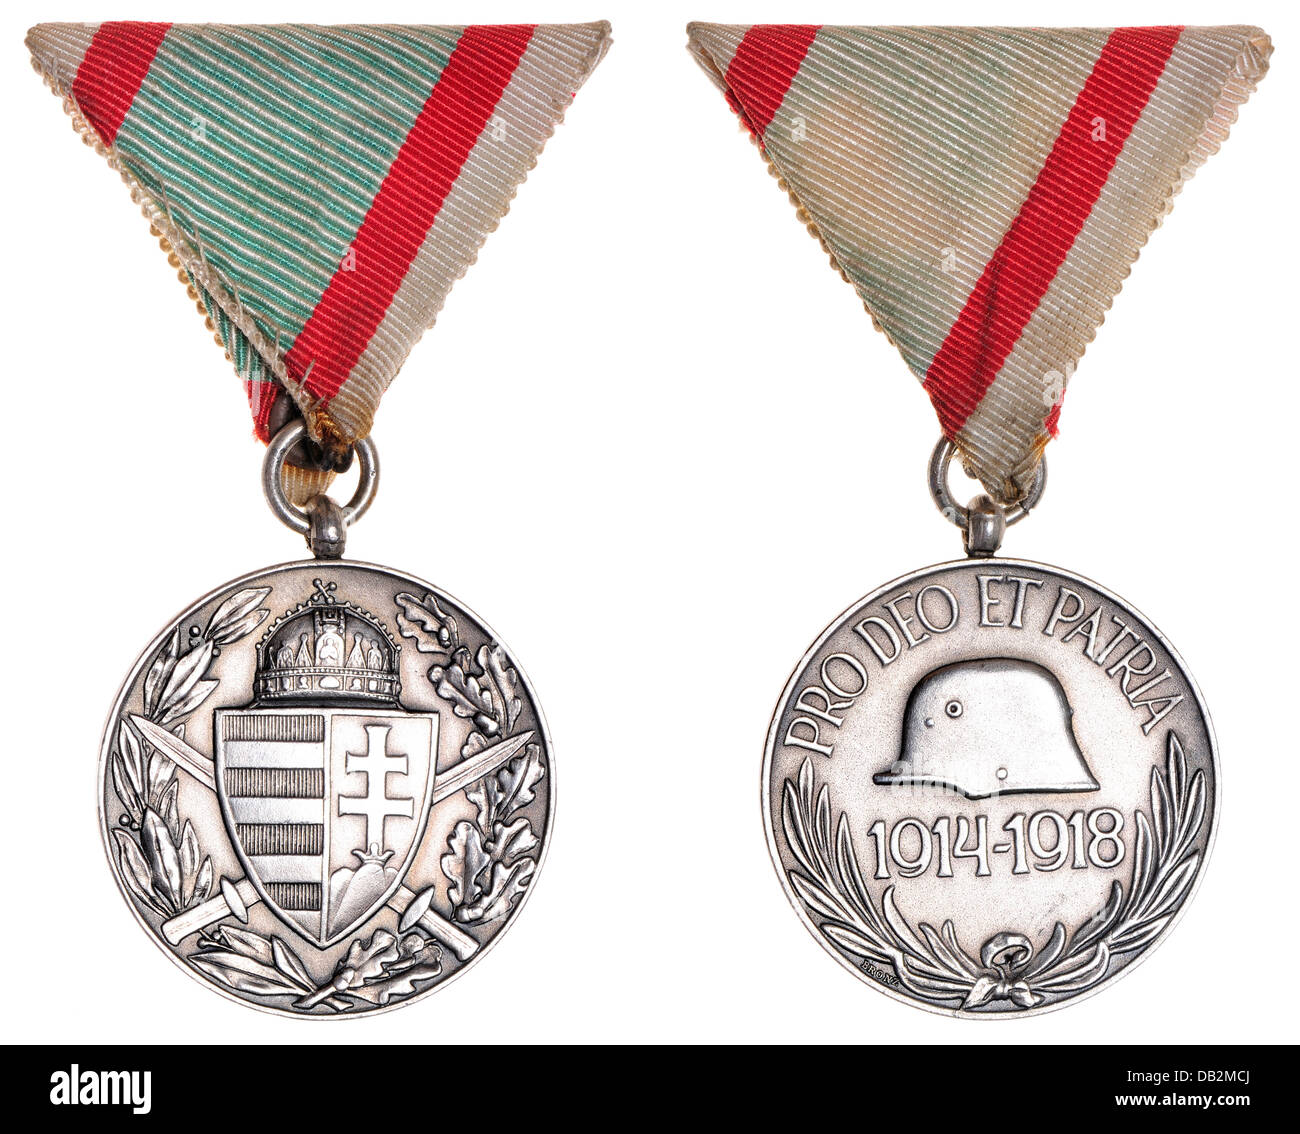 Première Guerre mondiale hongrois médaille des combattants. 'Pro Deo et Patria 1914-1918' (pour Dieu et le pays) Banque D'Images